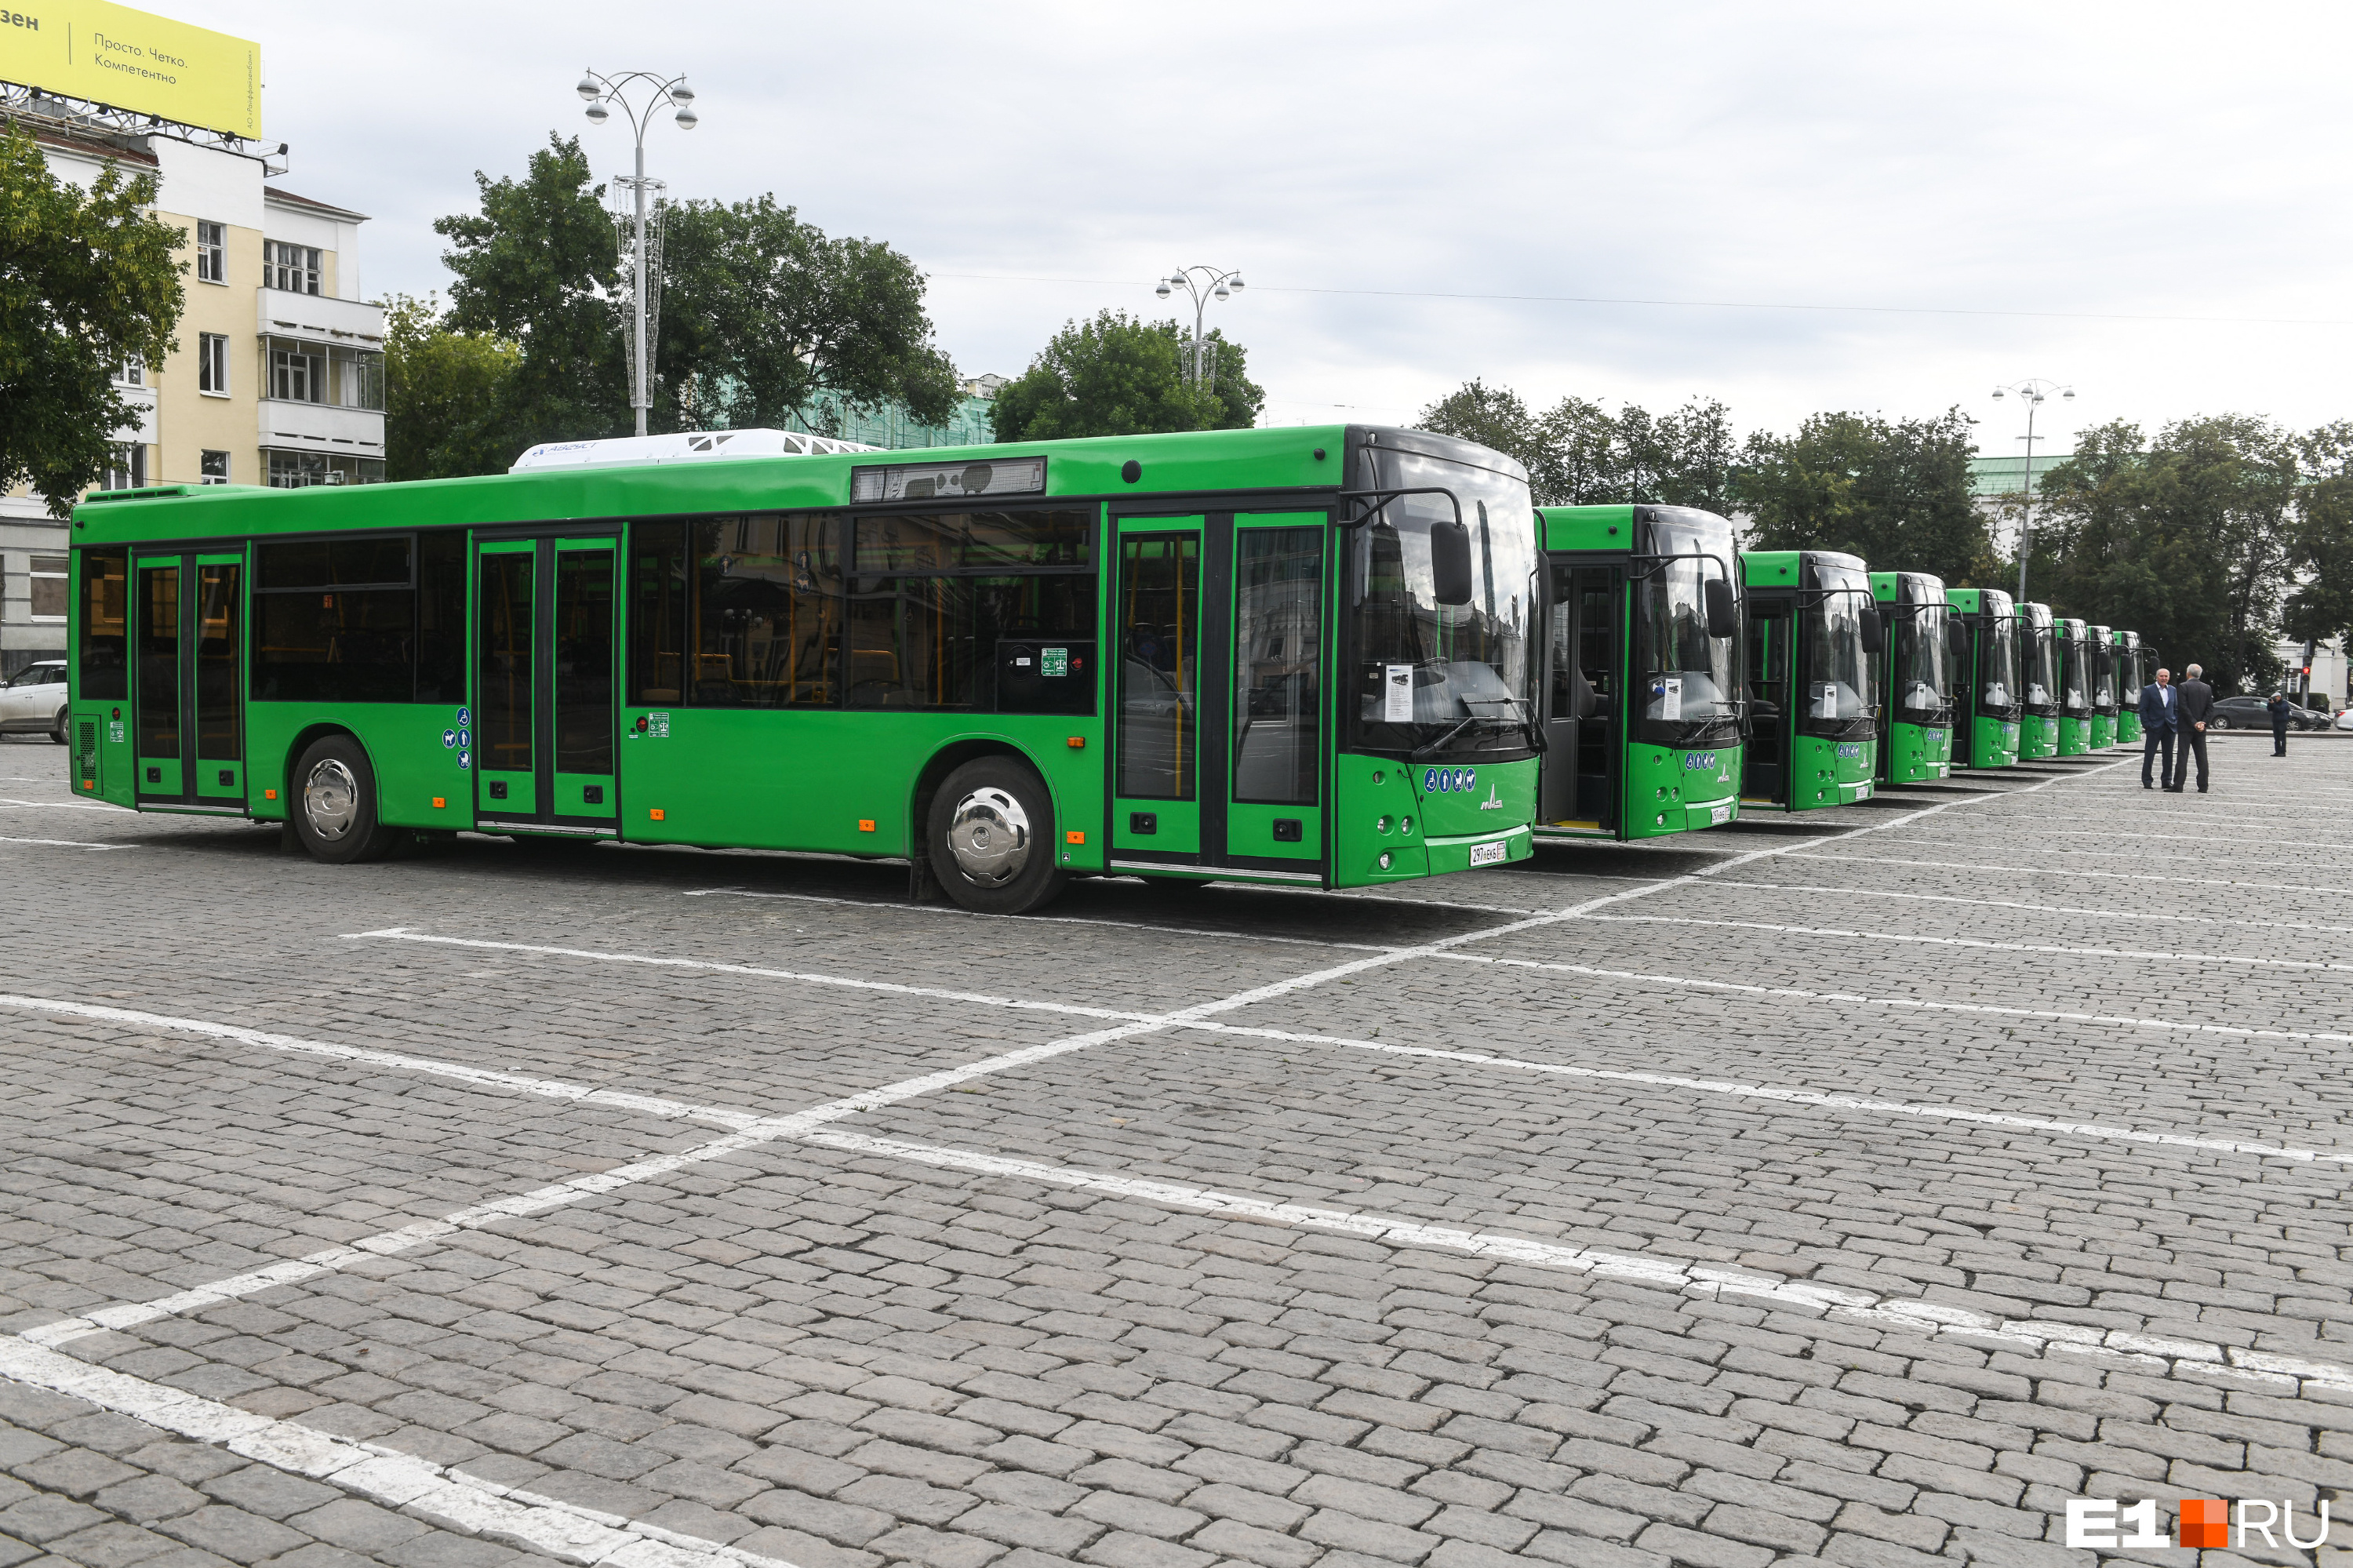 Екатеринбург получит 35 новых автобусов. На каких маршрутах они нужнее всего?